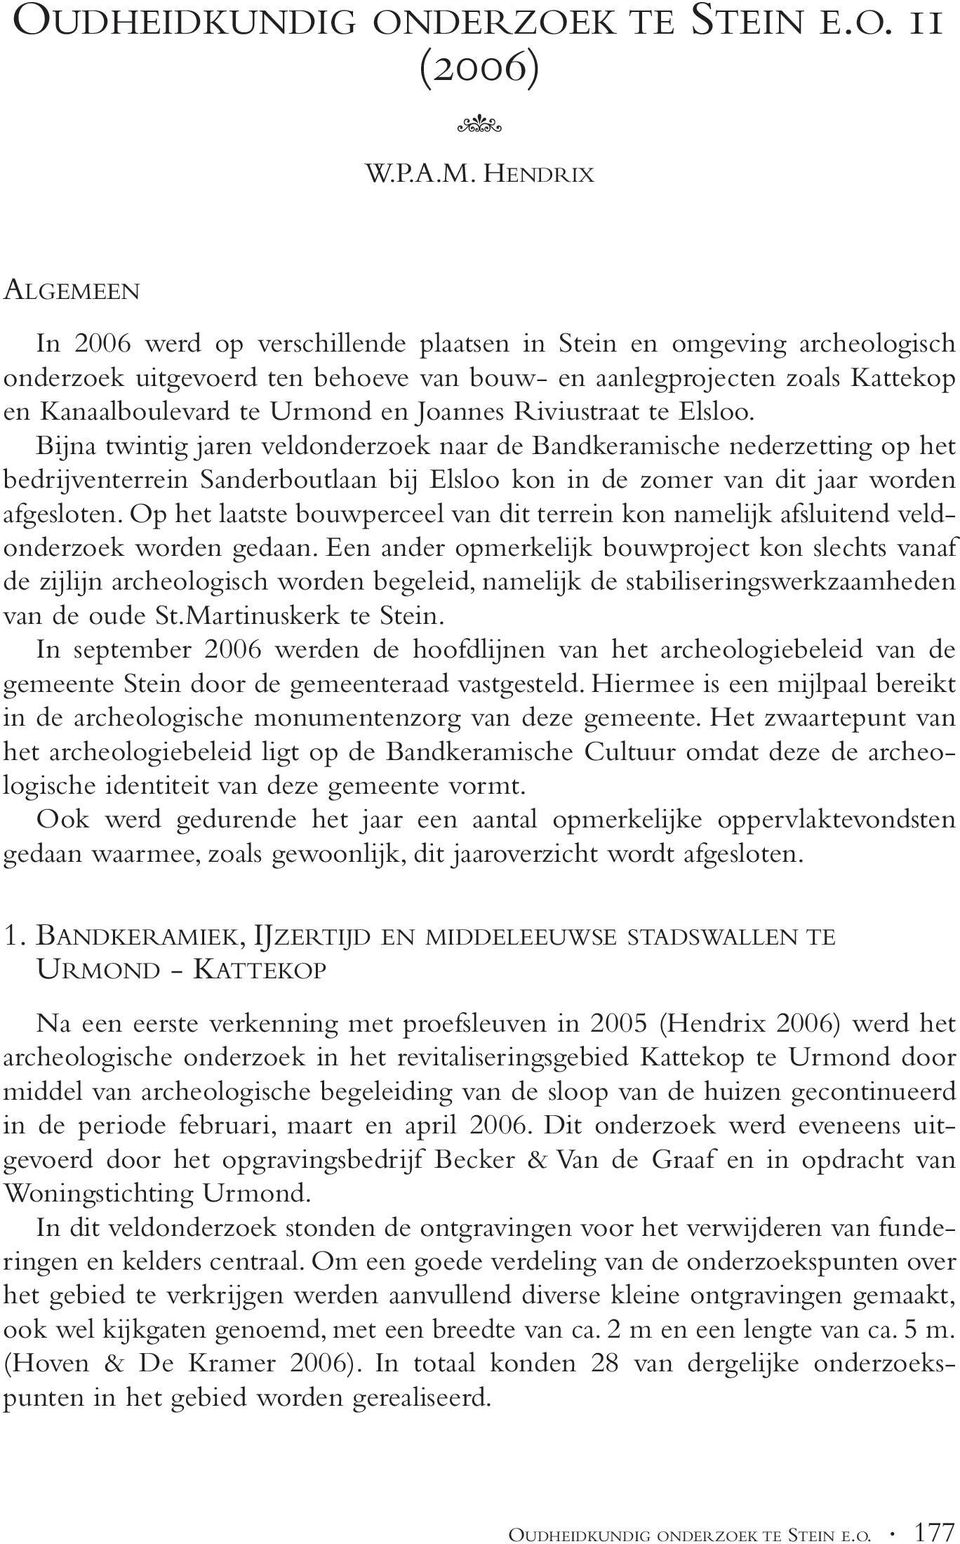 Joannes Riviustraat te Elsloo. Bijna twintig jaren veldonderzoek naar de Bandkeramische nederzetting op het bedrijventerrein Sanderboutlaan bij Elsloo kon in de zomer van dit jaar worden afgesloten.